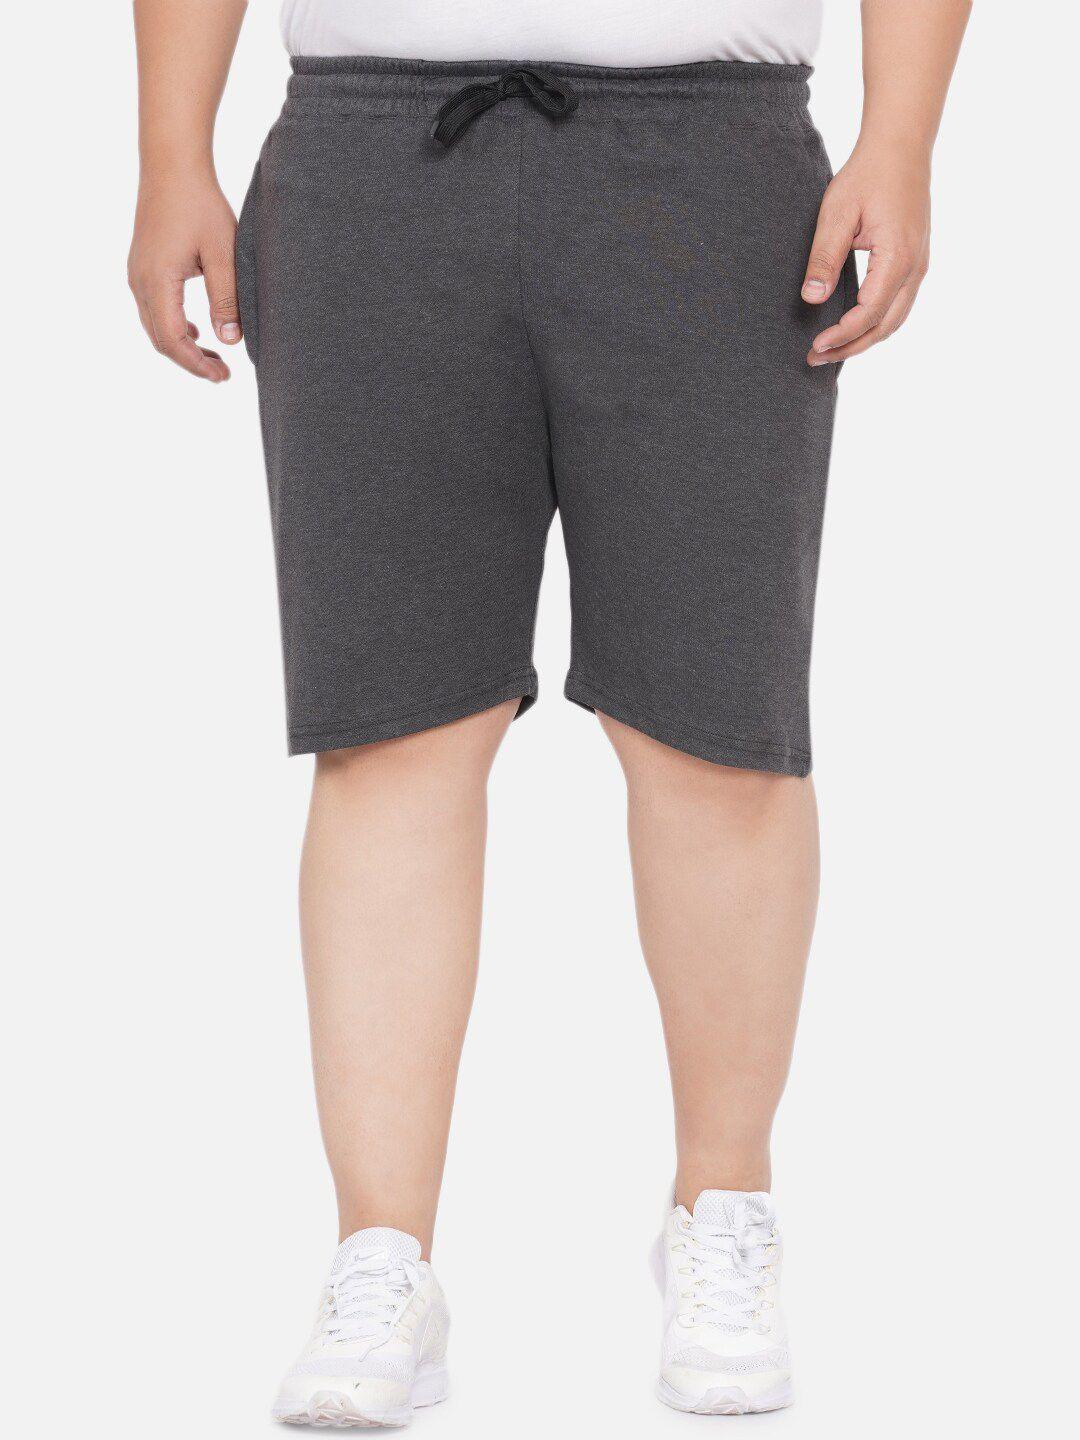 santonio-men-plus-size-pure-cotton-shorts